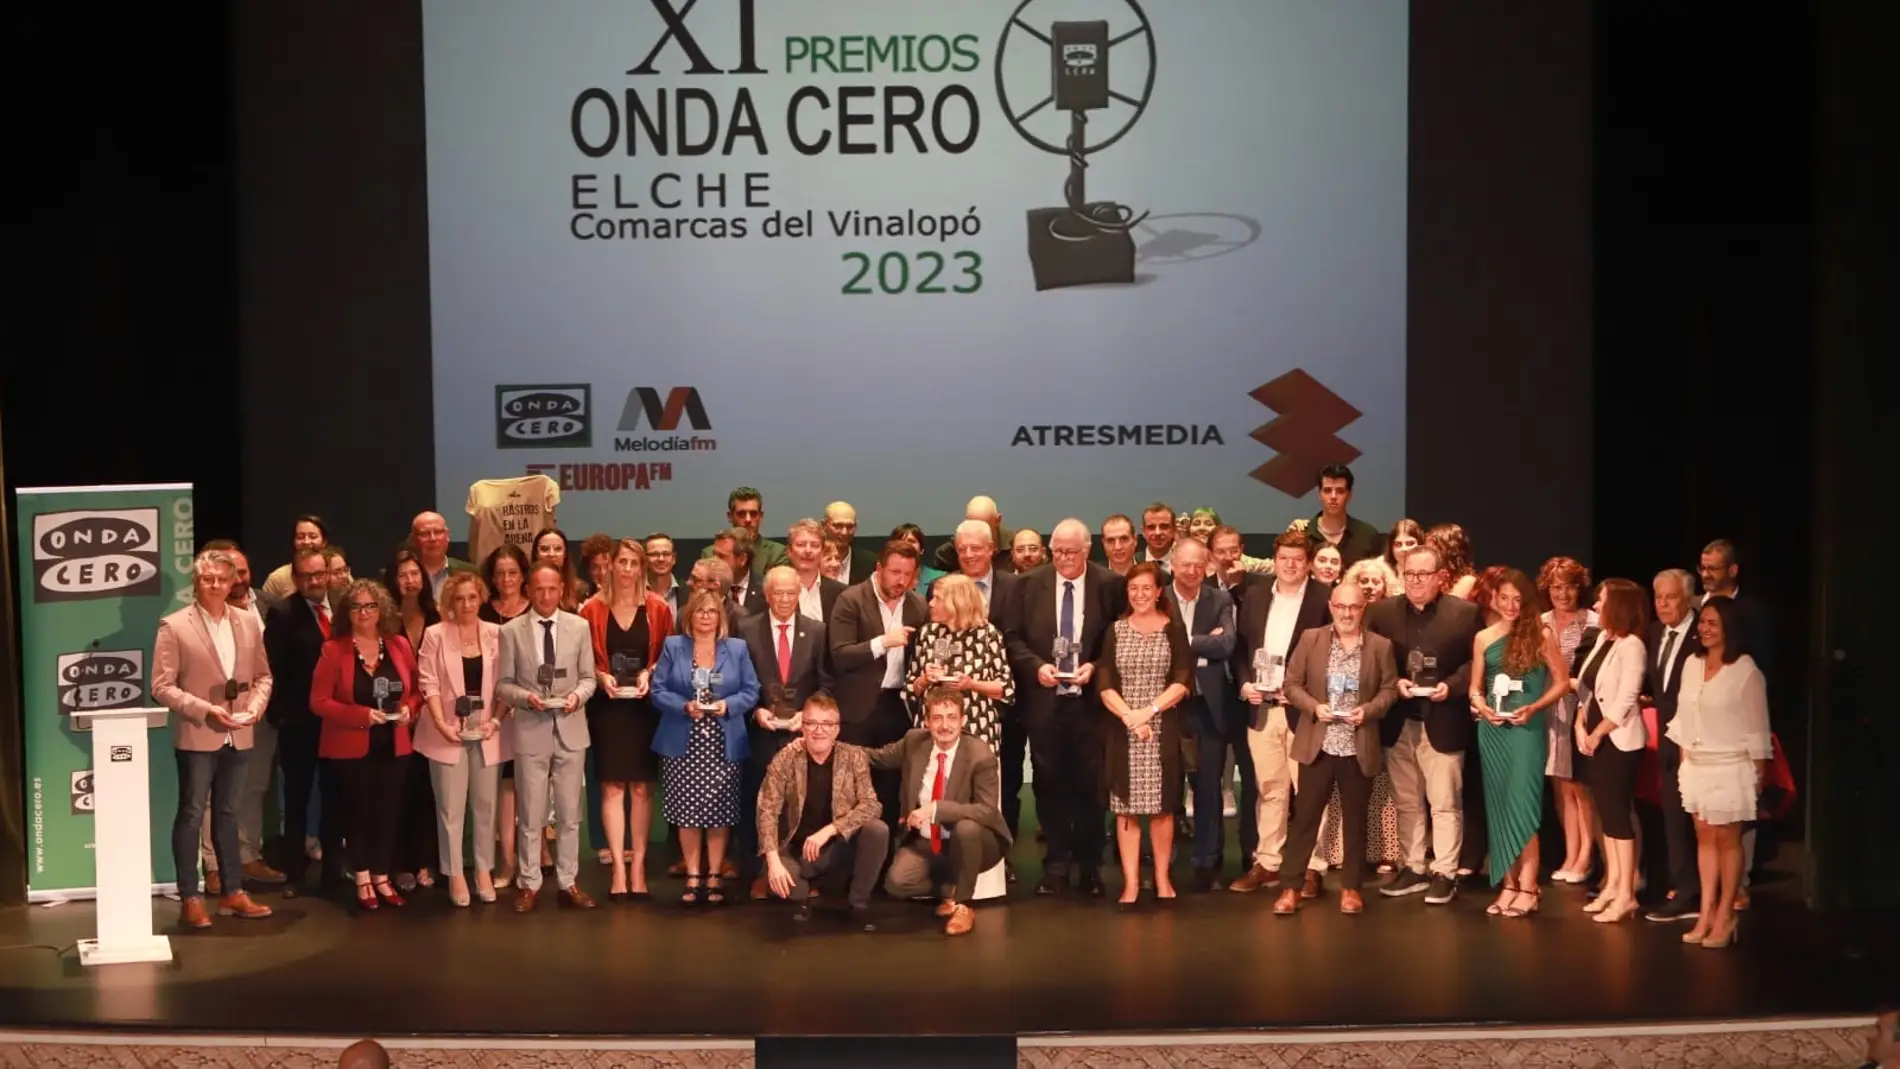 La gala de los XI Premios Onda Cero Elche-comarcas del Vinalopó conjuga reconocimiento y reivindicación 